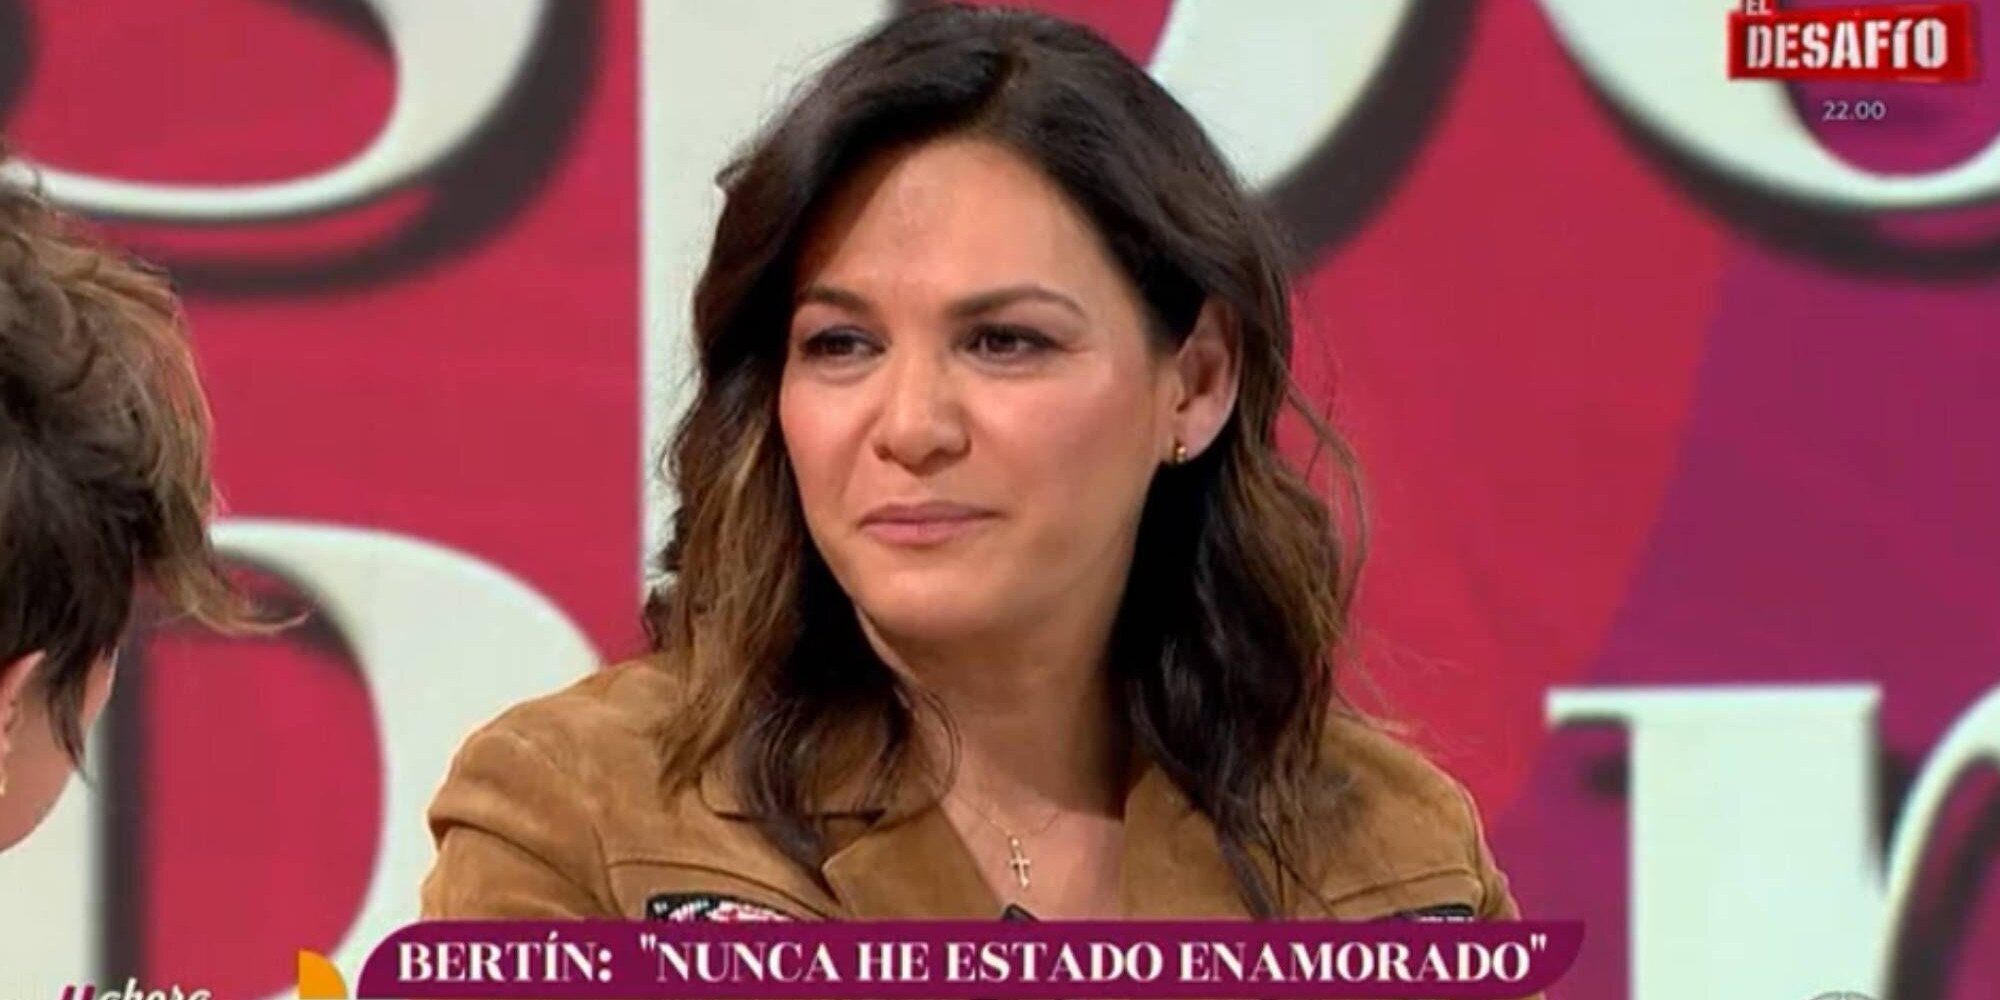 Fabiola Martínez, hundida tras las declaraciones de Bertín Osborne: "Merezco respeto a esos 20 años juntos"